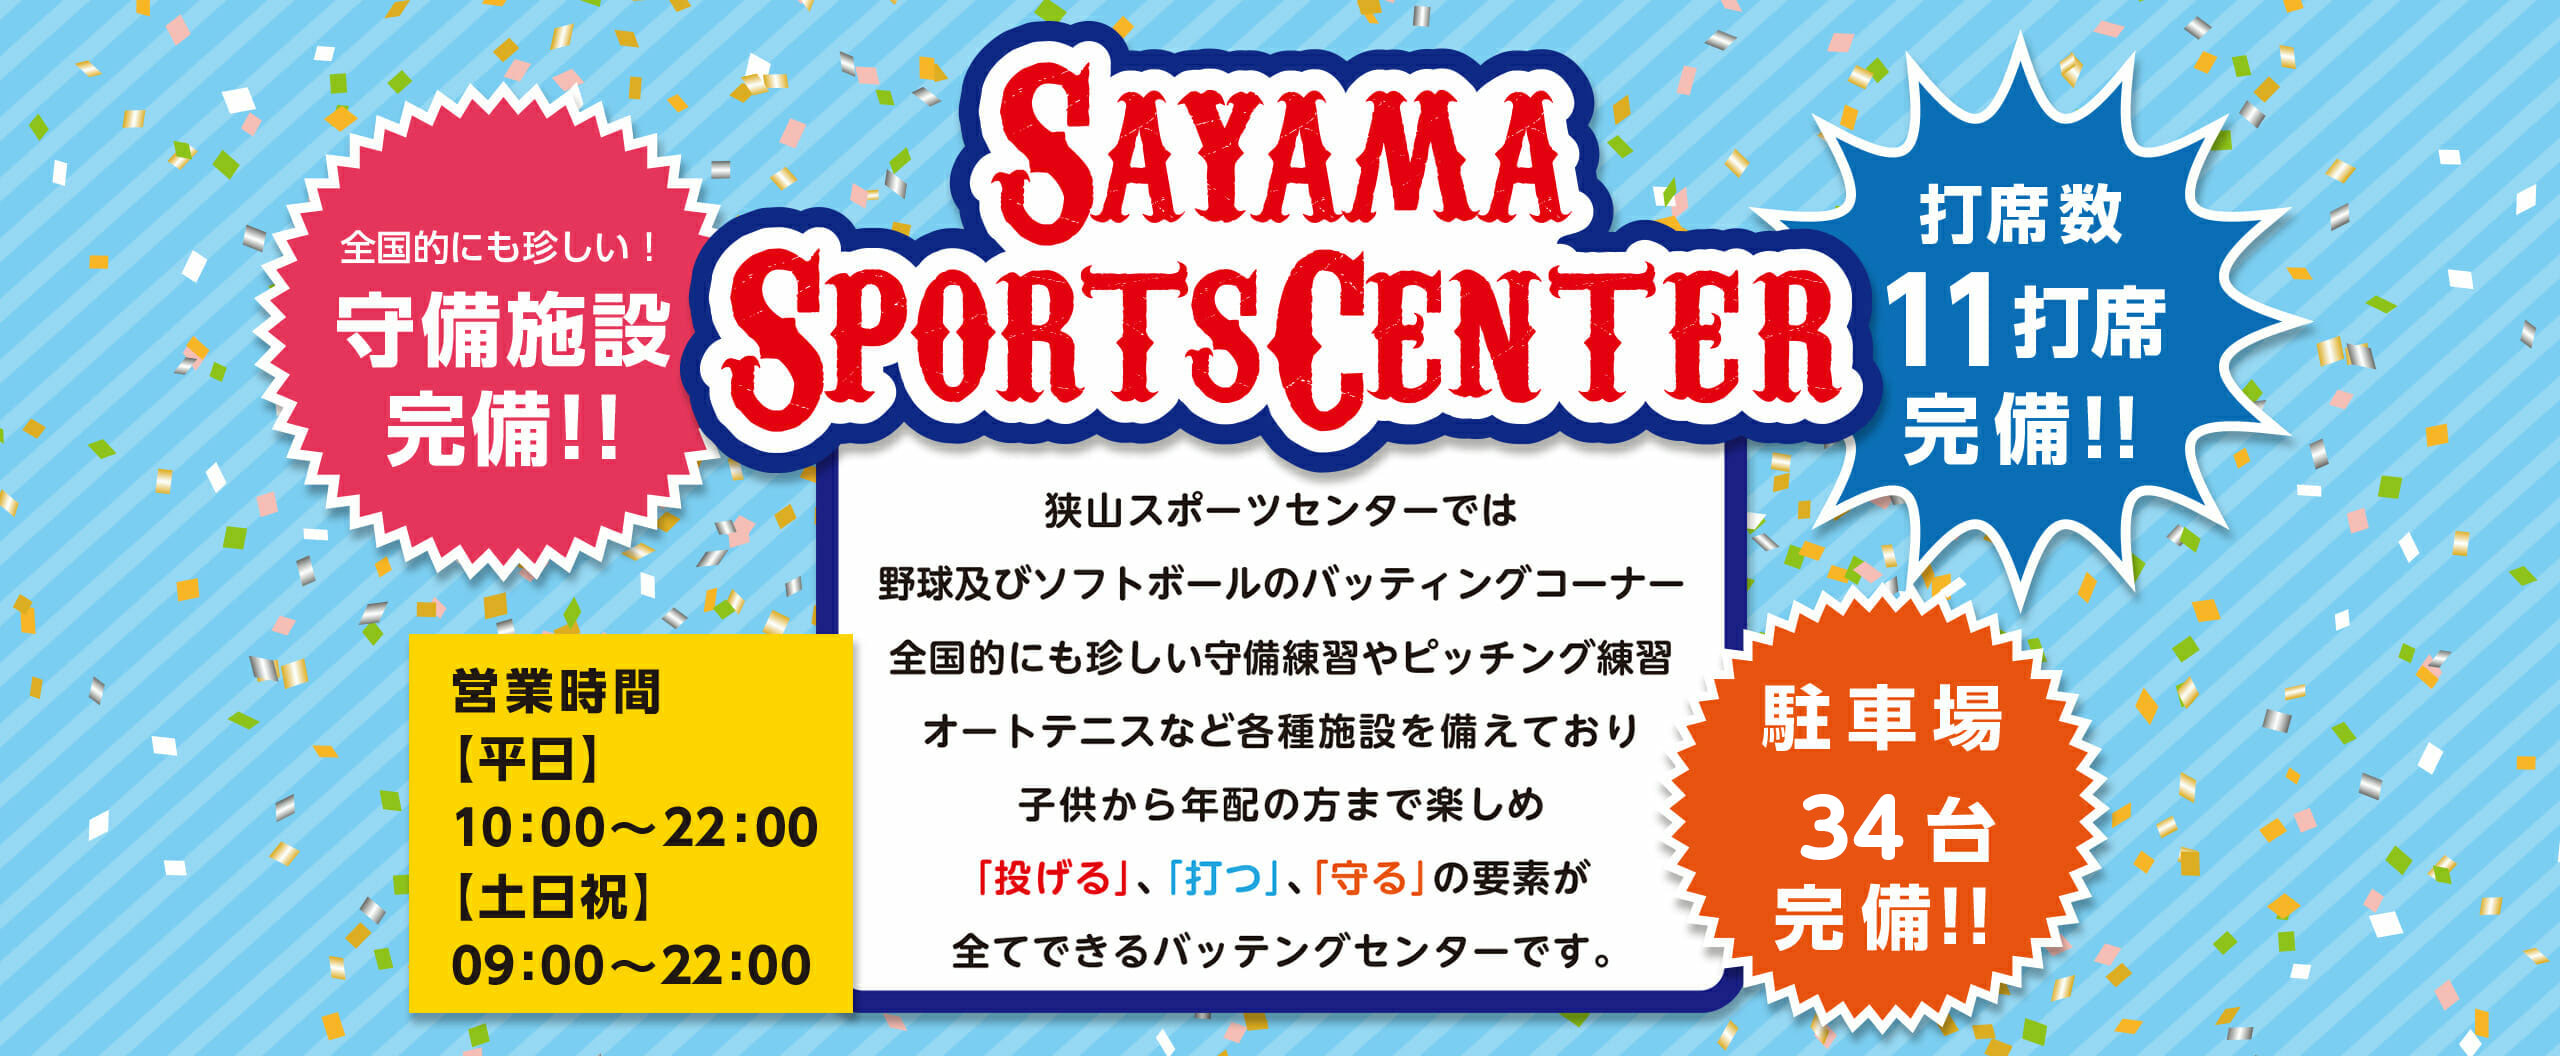 狭山スポーツセンター